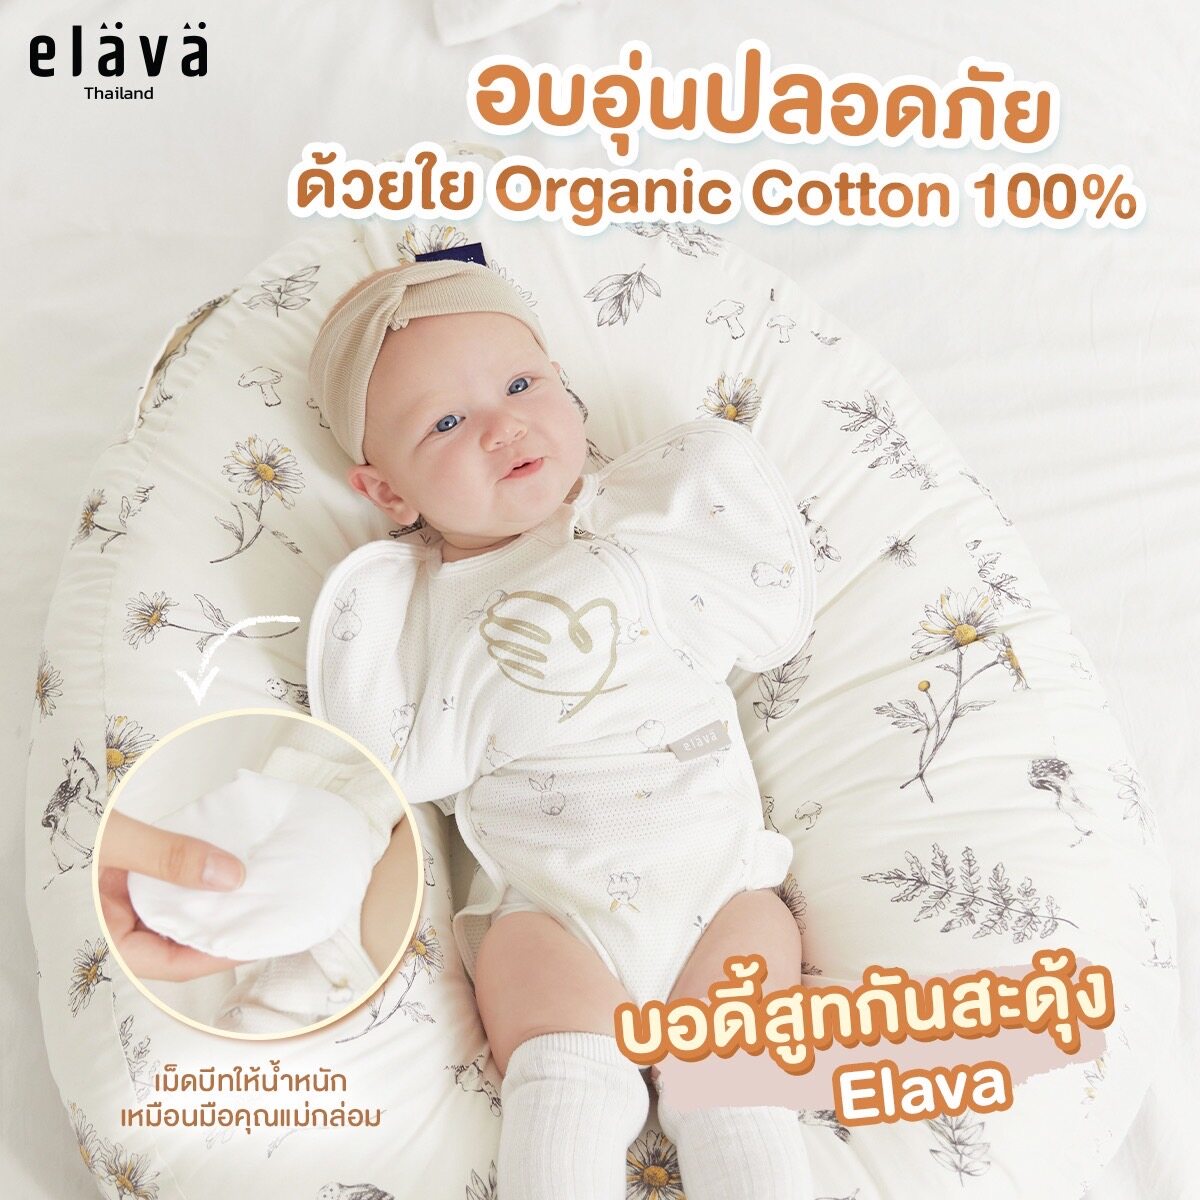 Elava ชุดกันสะดุ้ง ถุงนอนเด็ก ผ้าห่อตัว กันสะดุ้ง สำหรับเด็ก New Collection Bunny (Organic Cotton 100%)